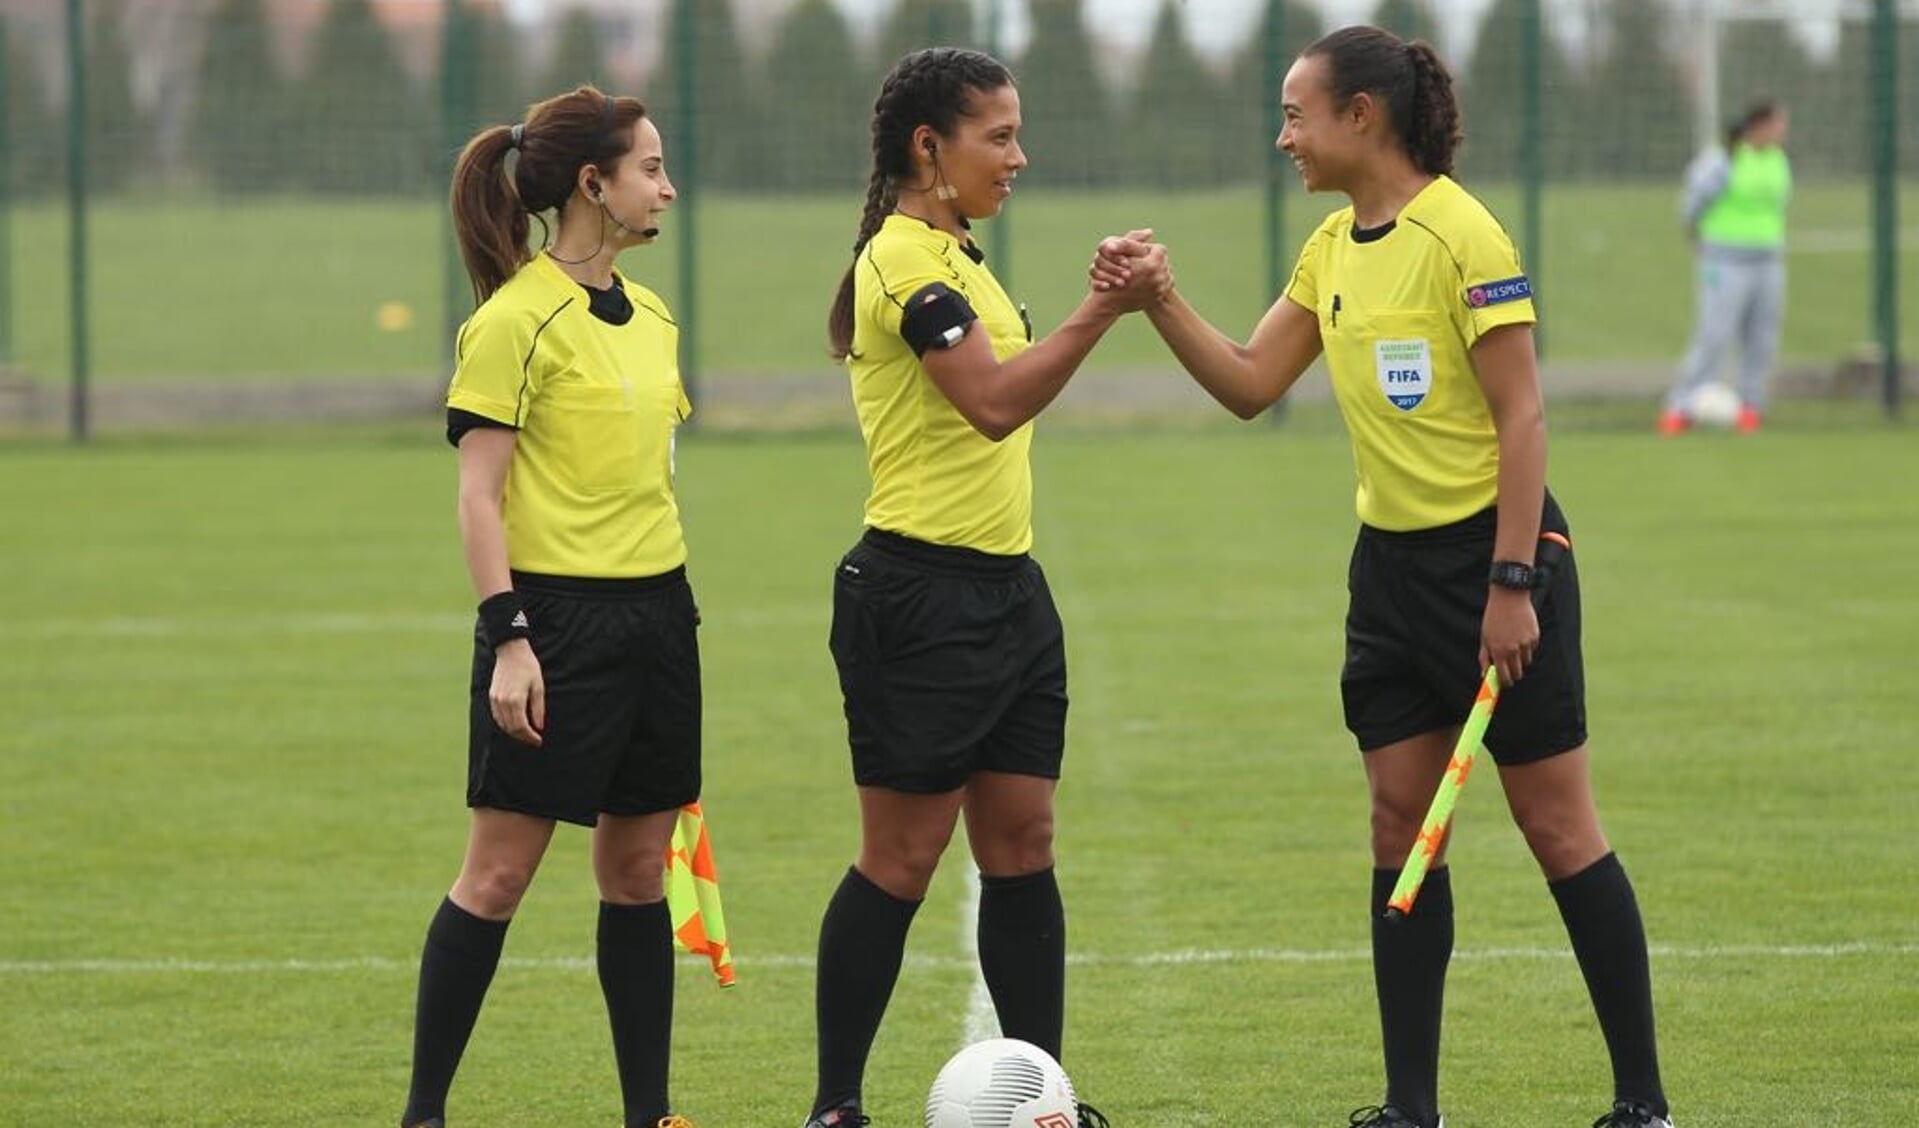 De Obdamse Franca Overtoom (r) is als eerste vrouwelijke official aangesteld om te assisteren bij een wedstrijd in de Eredivisie.